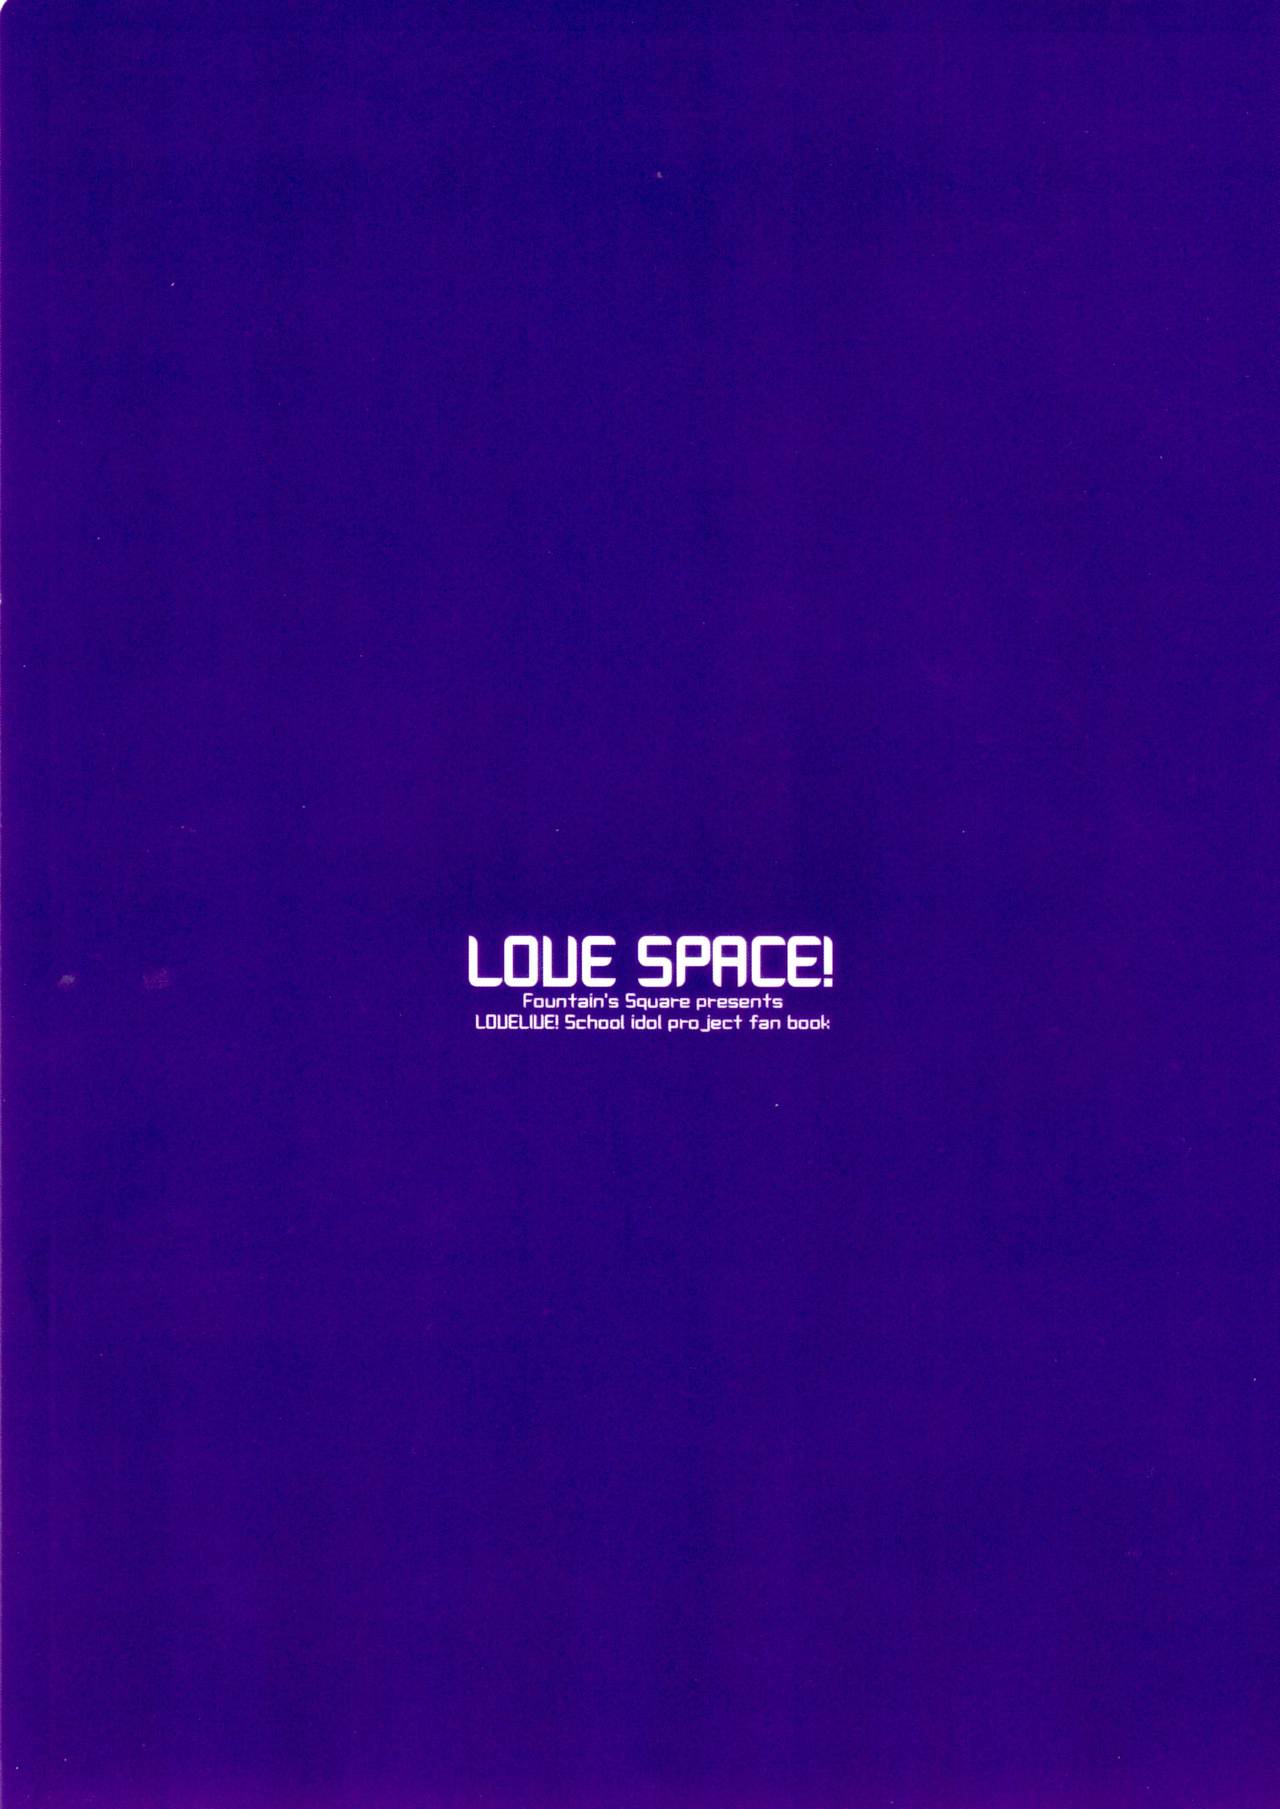 (あなたとラブライブ! 5) [Fountain's Square (はぎやまさかげ)] LOVE SPACE! (ラブライブ!)